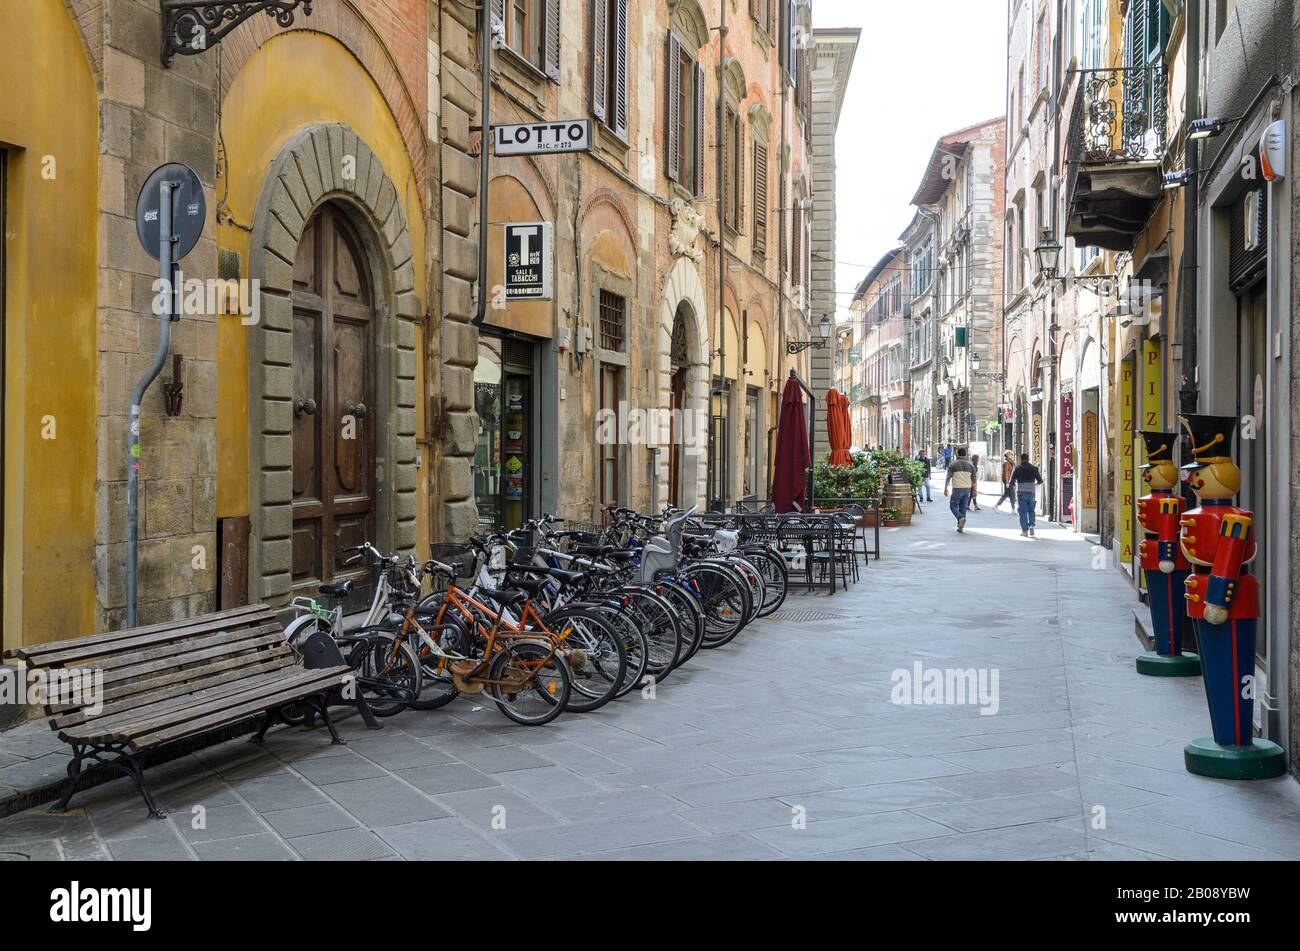 Une scène de rue traditionnelle dans l'une des rues courbes de la ville historique de Pise, en Toscane, Italie. Banque D'Images